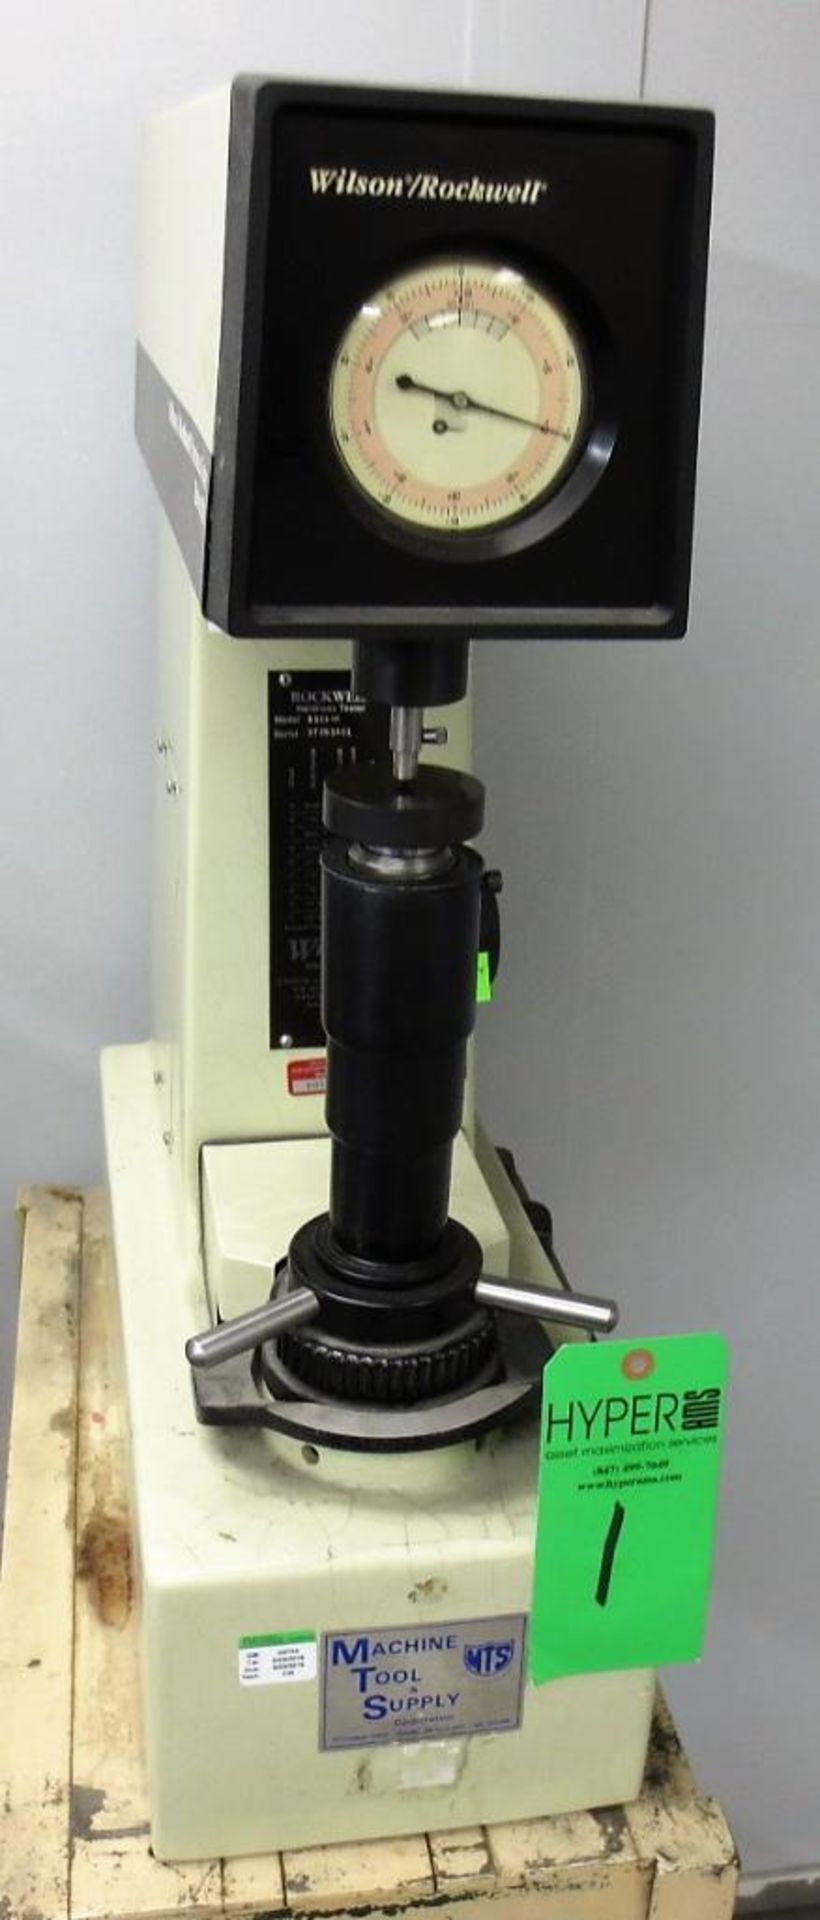 Wilson Rockwell Hardness Tester, Model B503-R, S/N 93751401 - Image 3 of 4